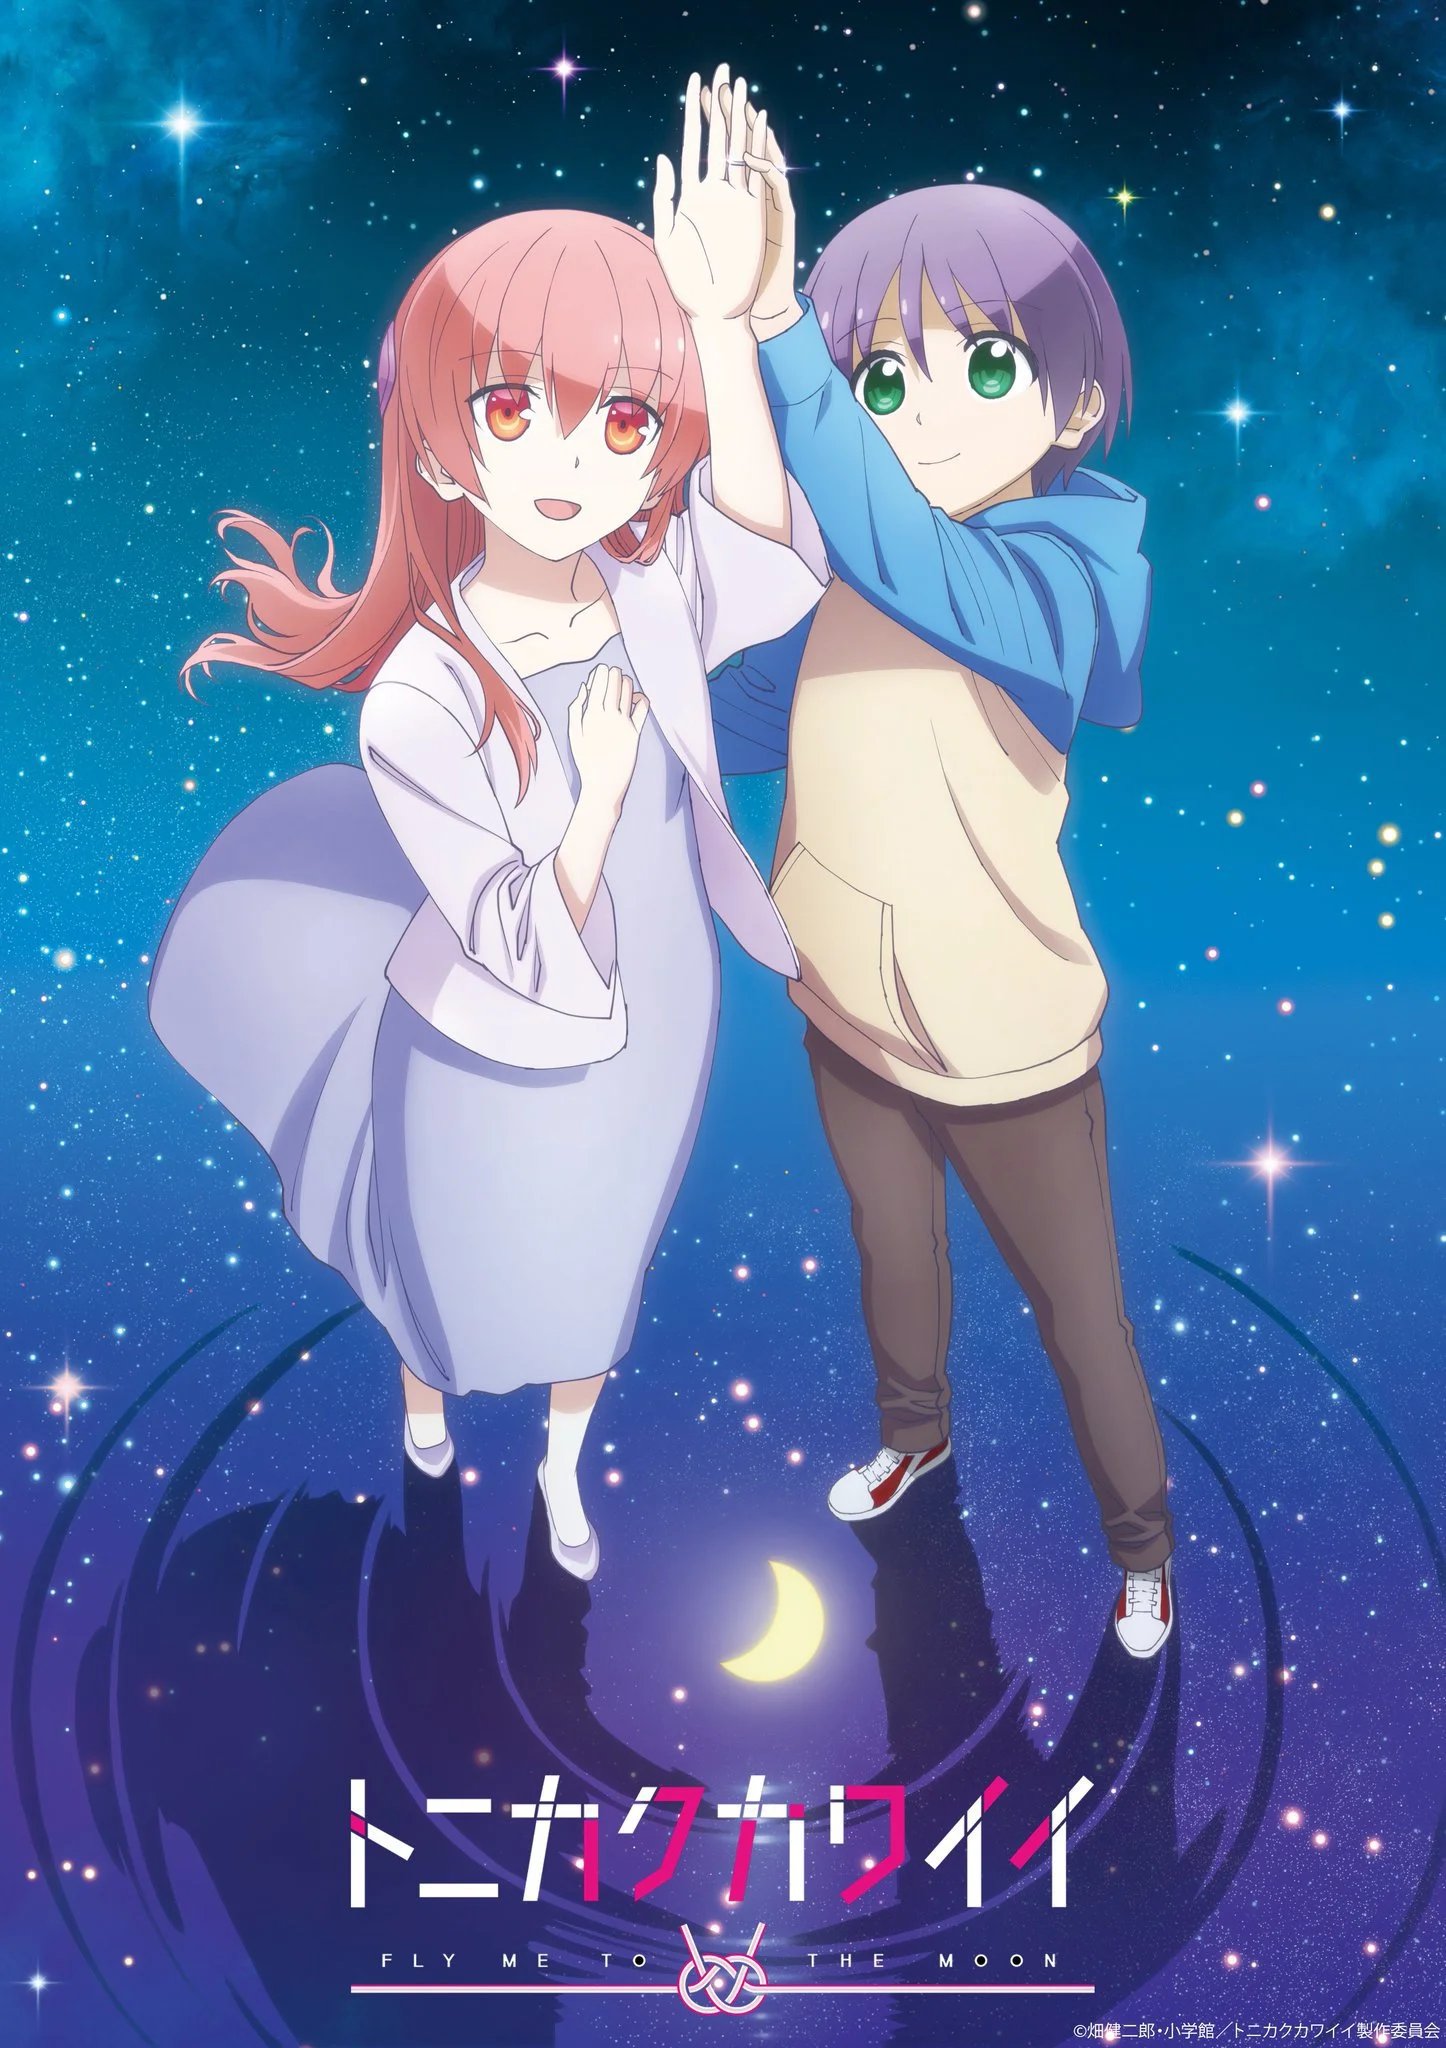 Animes In Japan 🎄 on X: INFO A 2ª temporada do anime de Tonikaku Kawaii  terá o total de 12 episódios segundo vazamentos recentes. 📌Estreia em  abril com a produção do estúdio